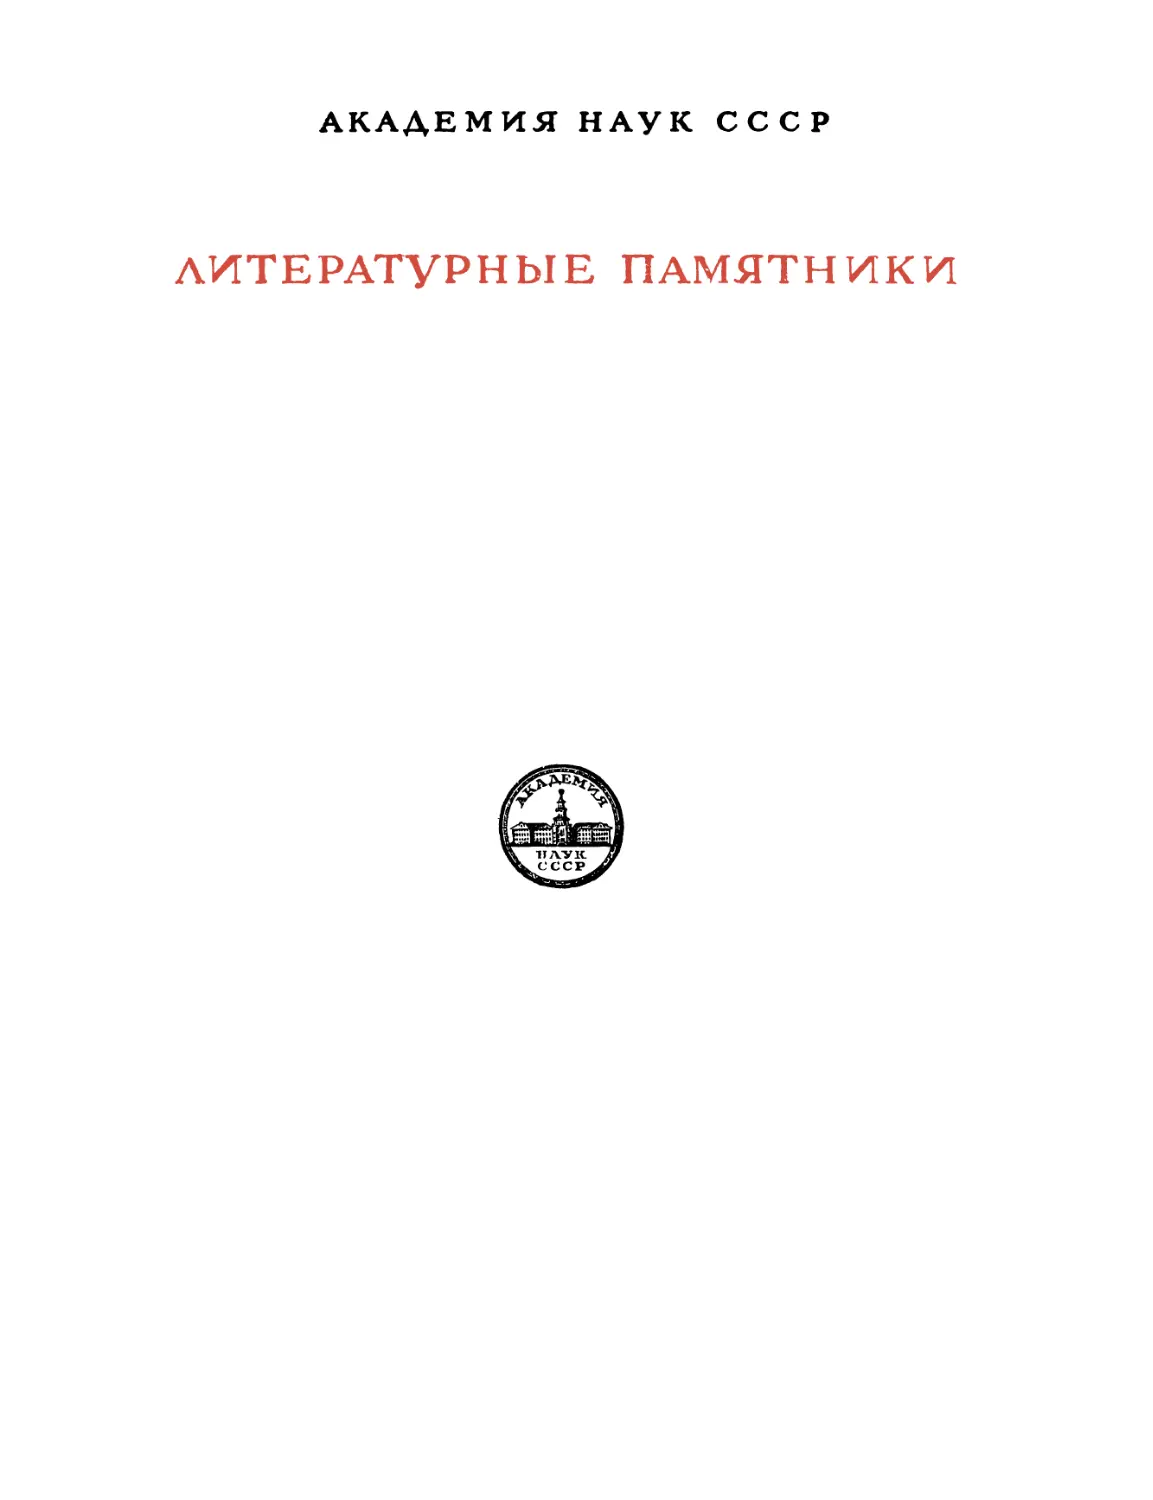 Посошков И.Т. Книга о скудости и богатстве и другие сочинения - 1951